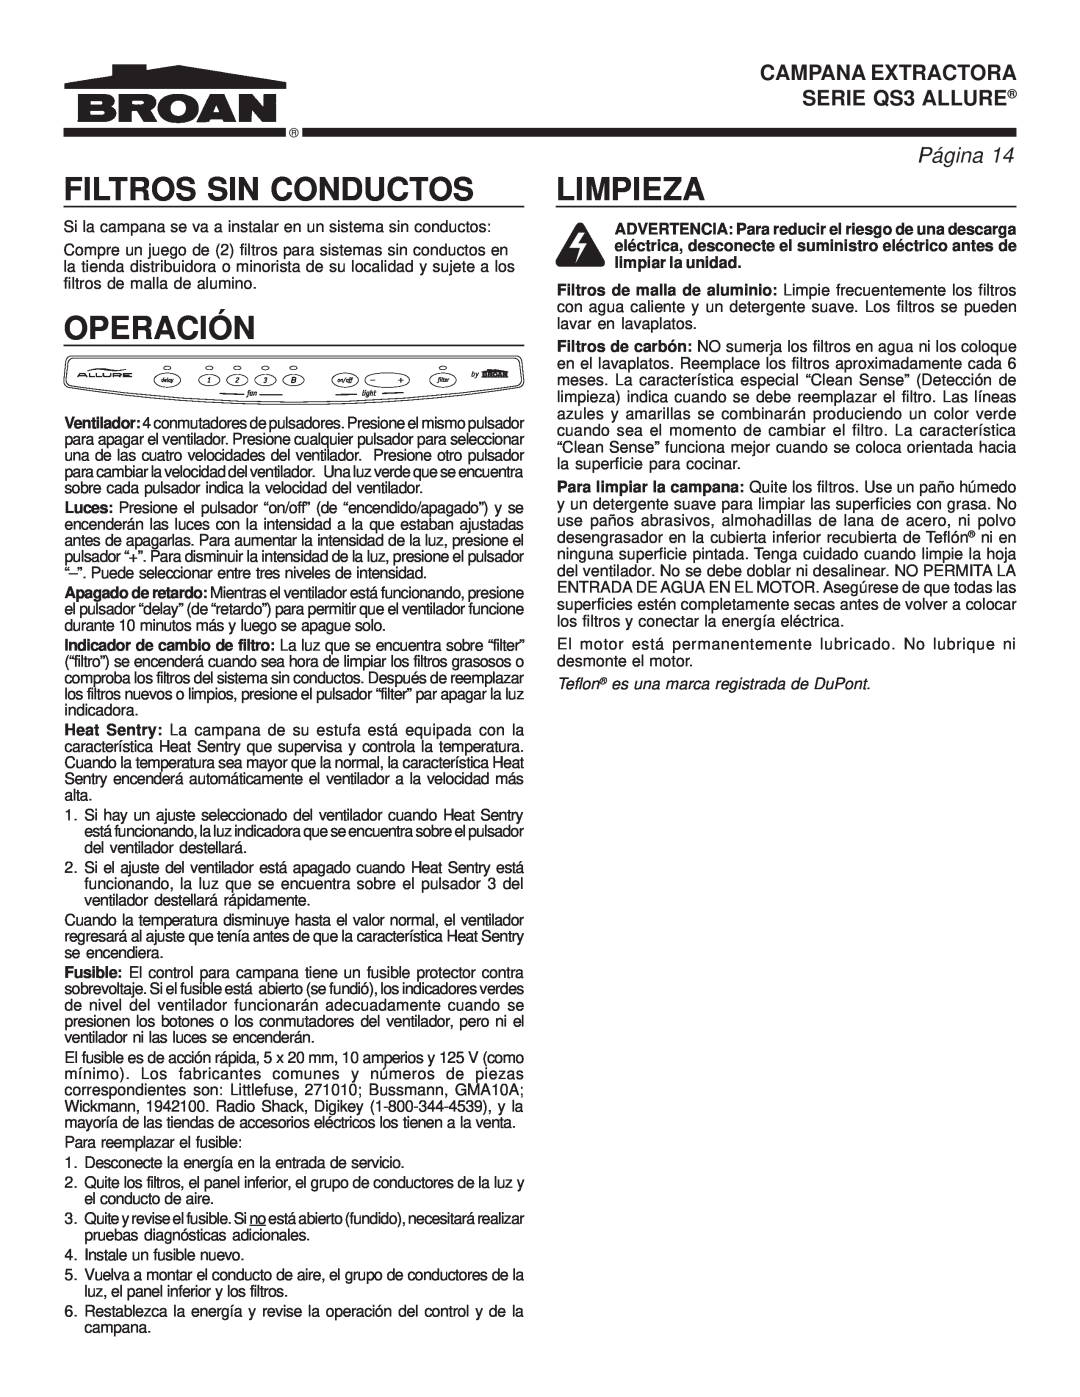 Broan QS3 warranty Filtros Sin Conductos, Operación, Limpieza, Teflon es una marca registrada de DuPont, Página 